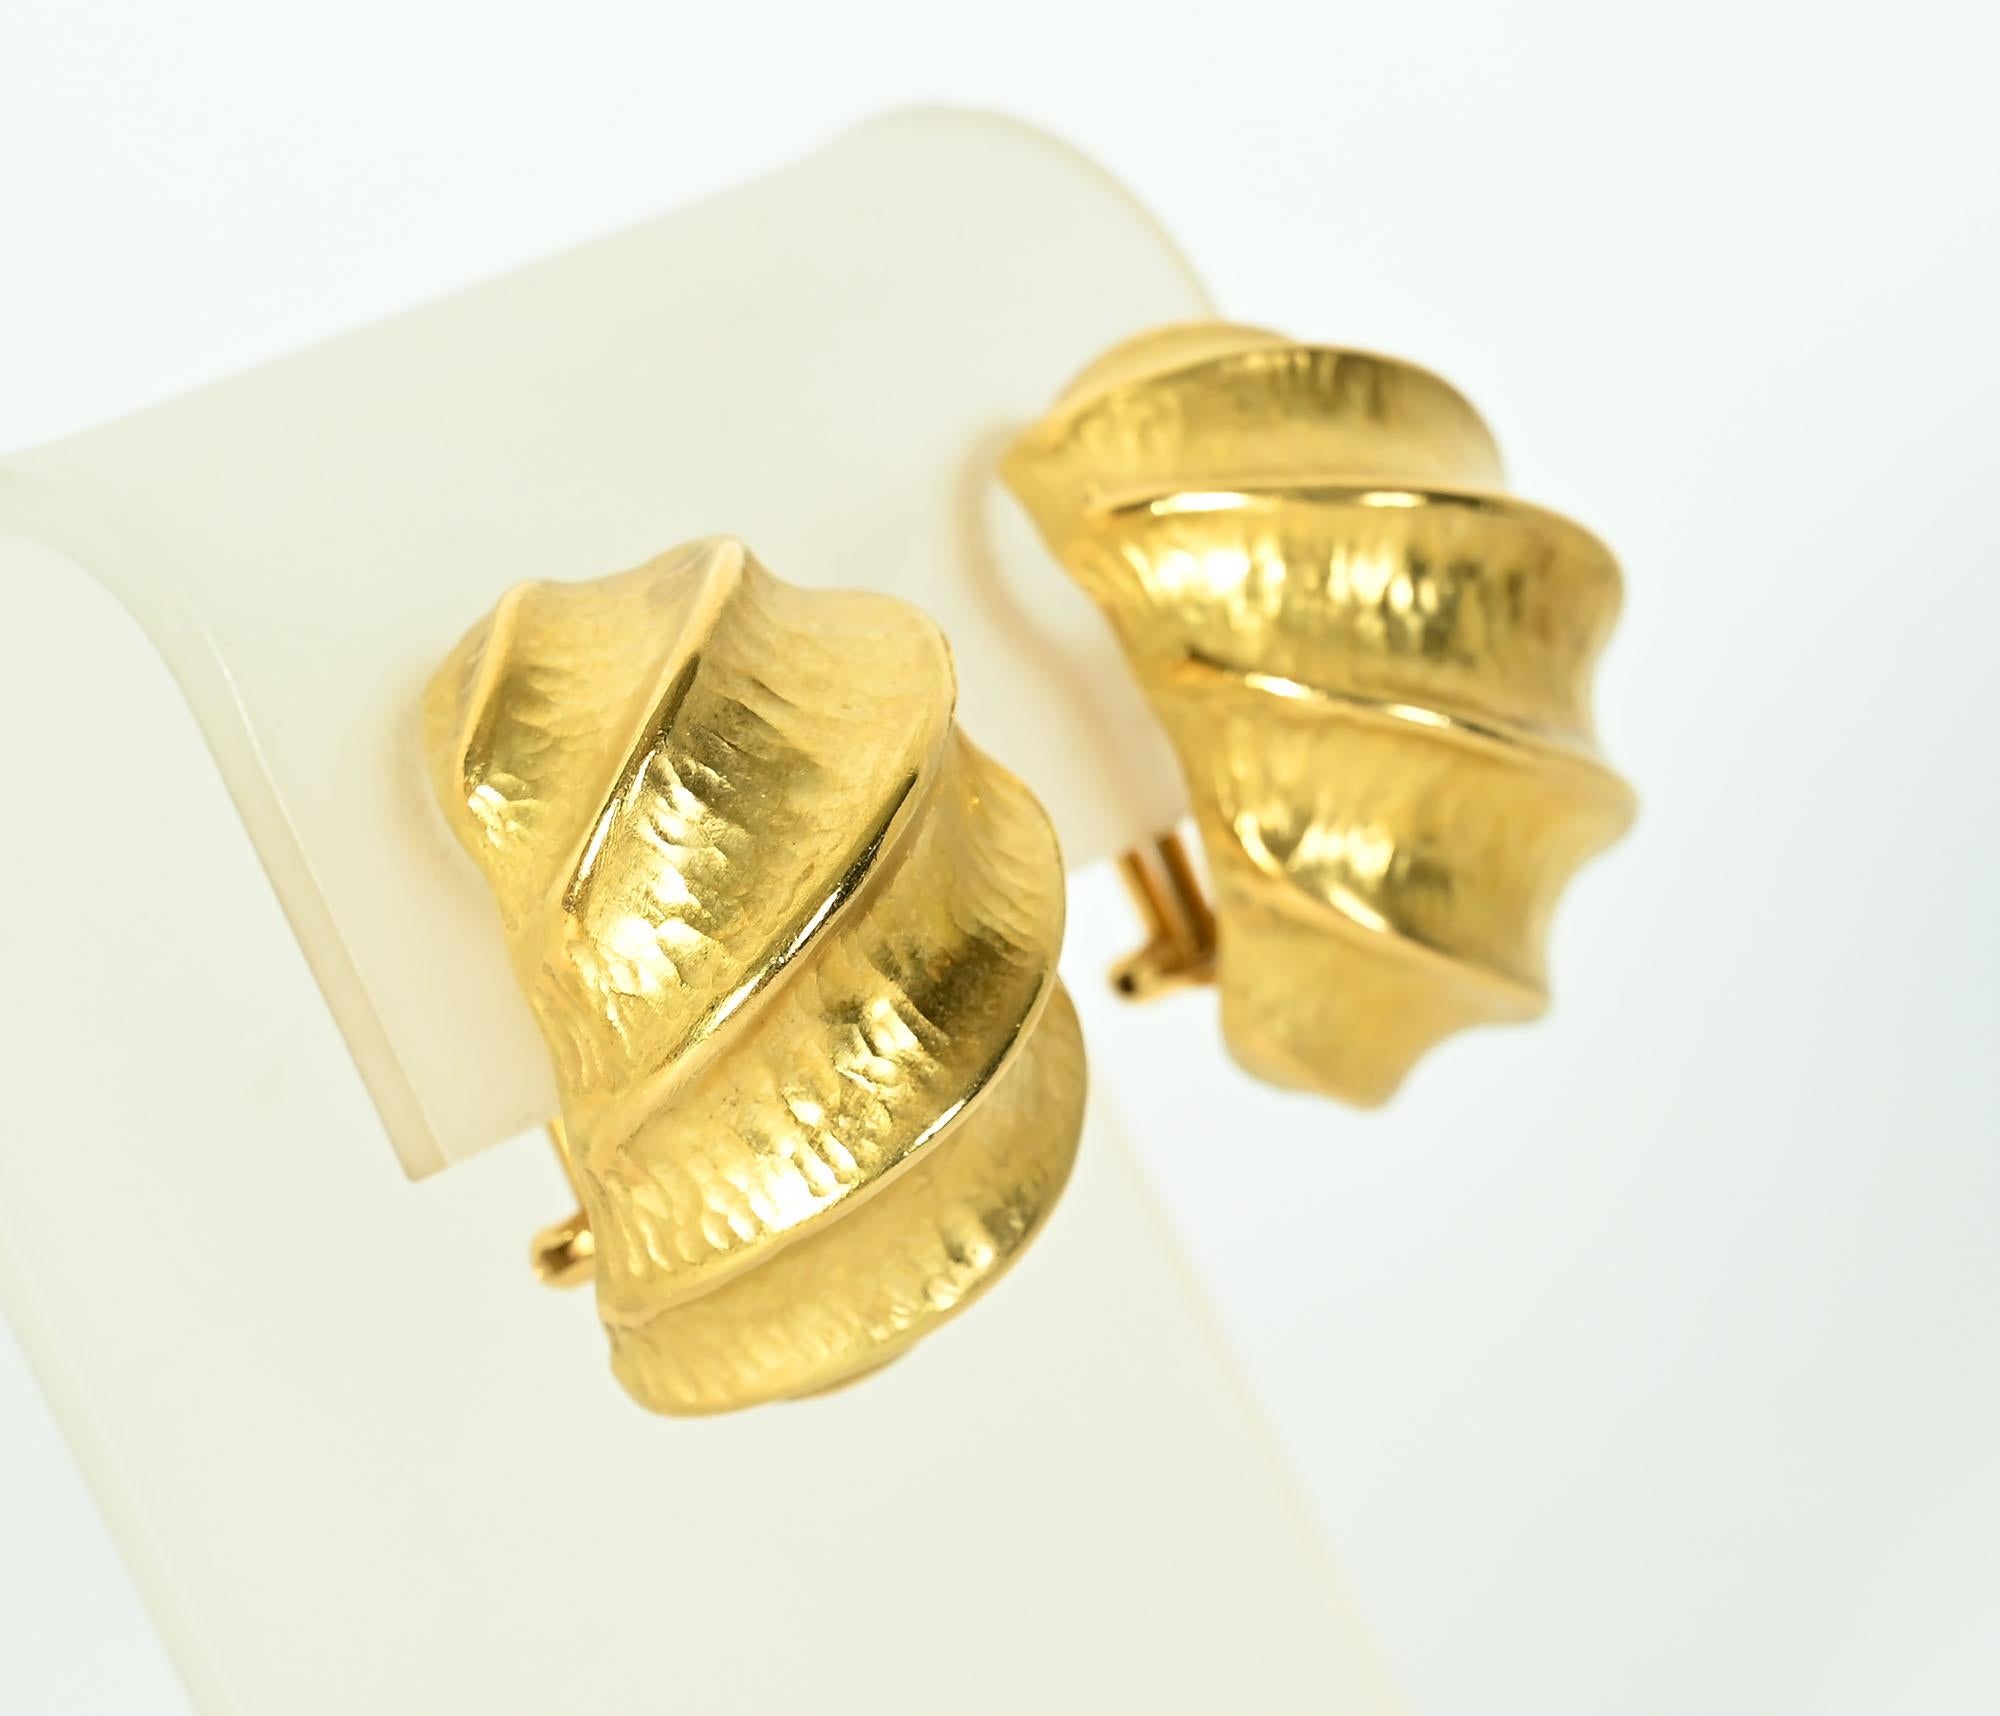 Ohrringe aus achtzehnkarätigem Gold mit gehämmerter Textur und erhabenem Wirbelmuster. Die Ohrringe sind kühn und ungewöhnlich in ihrer skulpturalen Musterung.
Rückseiten sind Pfosten und Klammern, die in Klammern umgewandelt werden können.